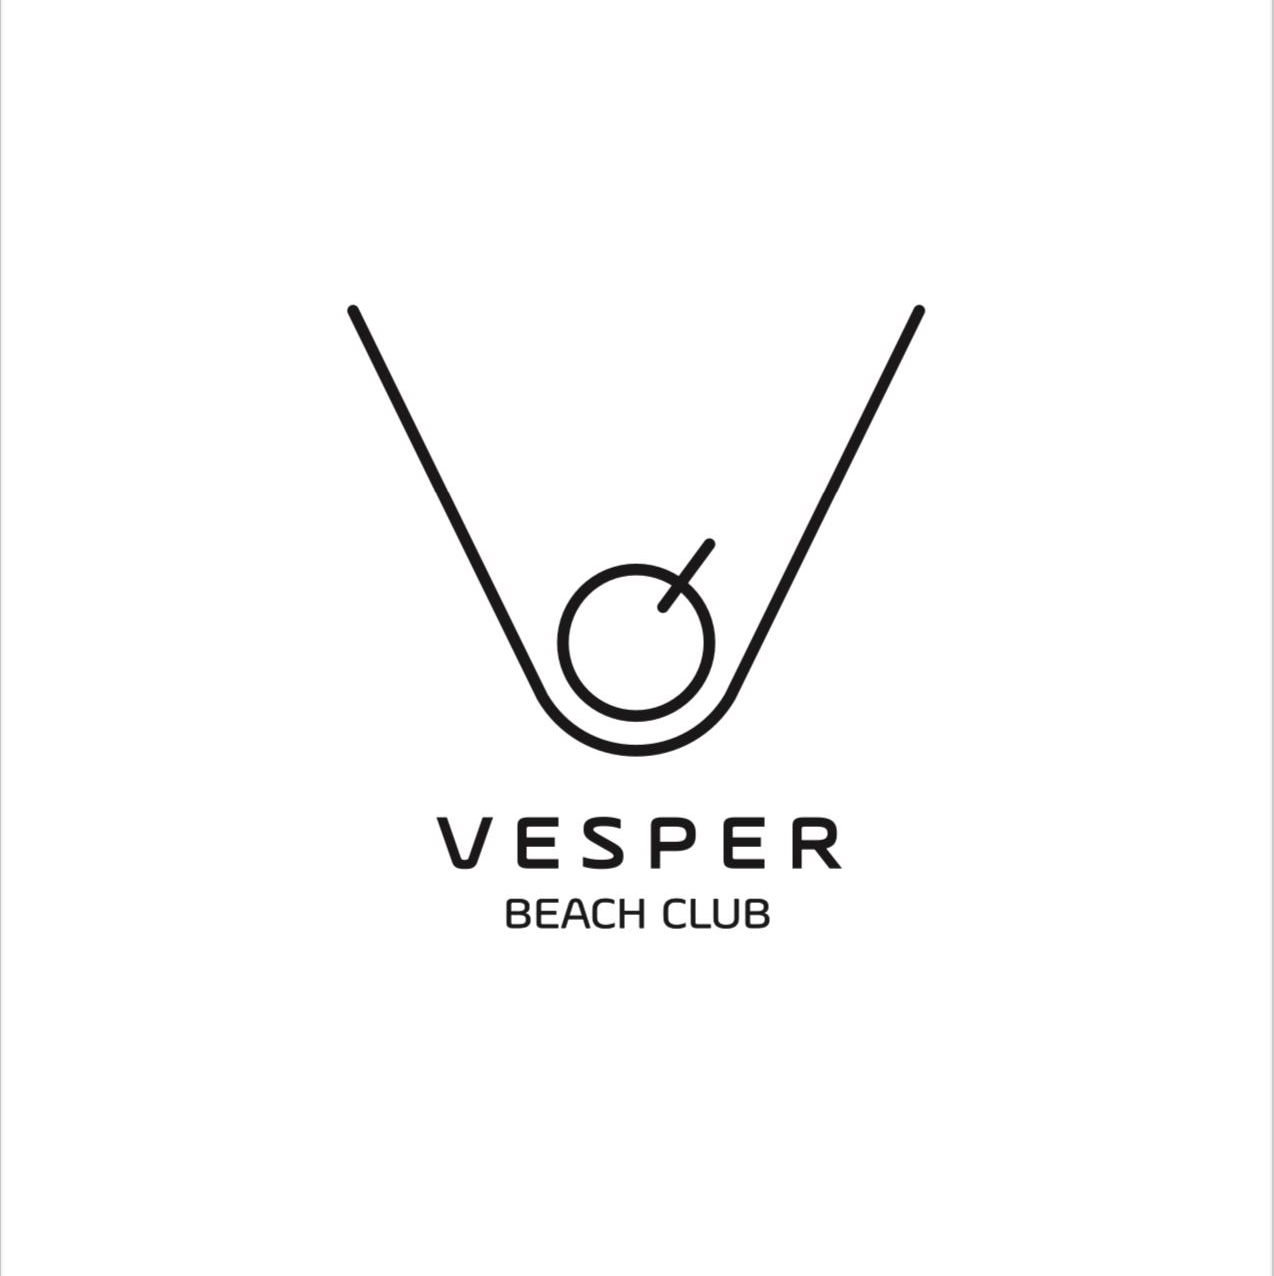 Vesper Beach Club